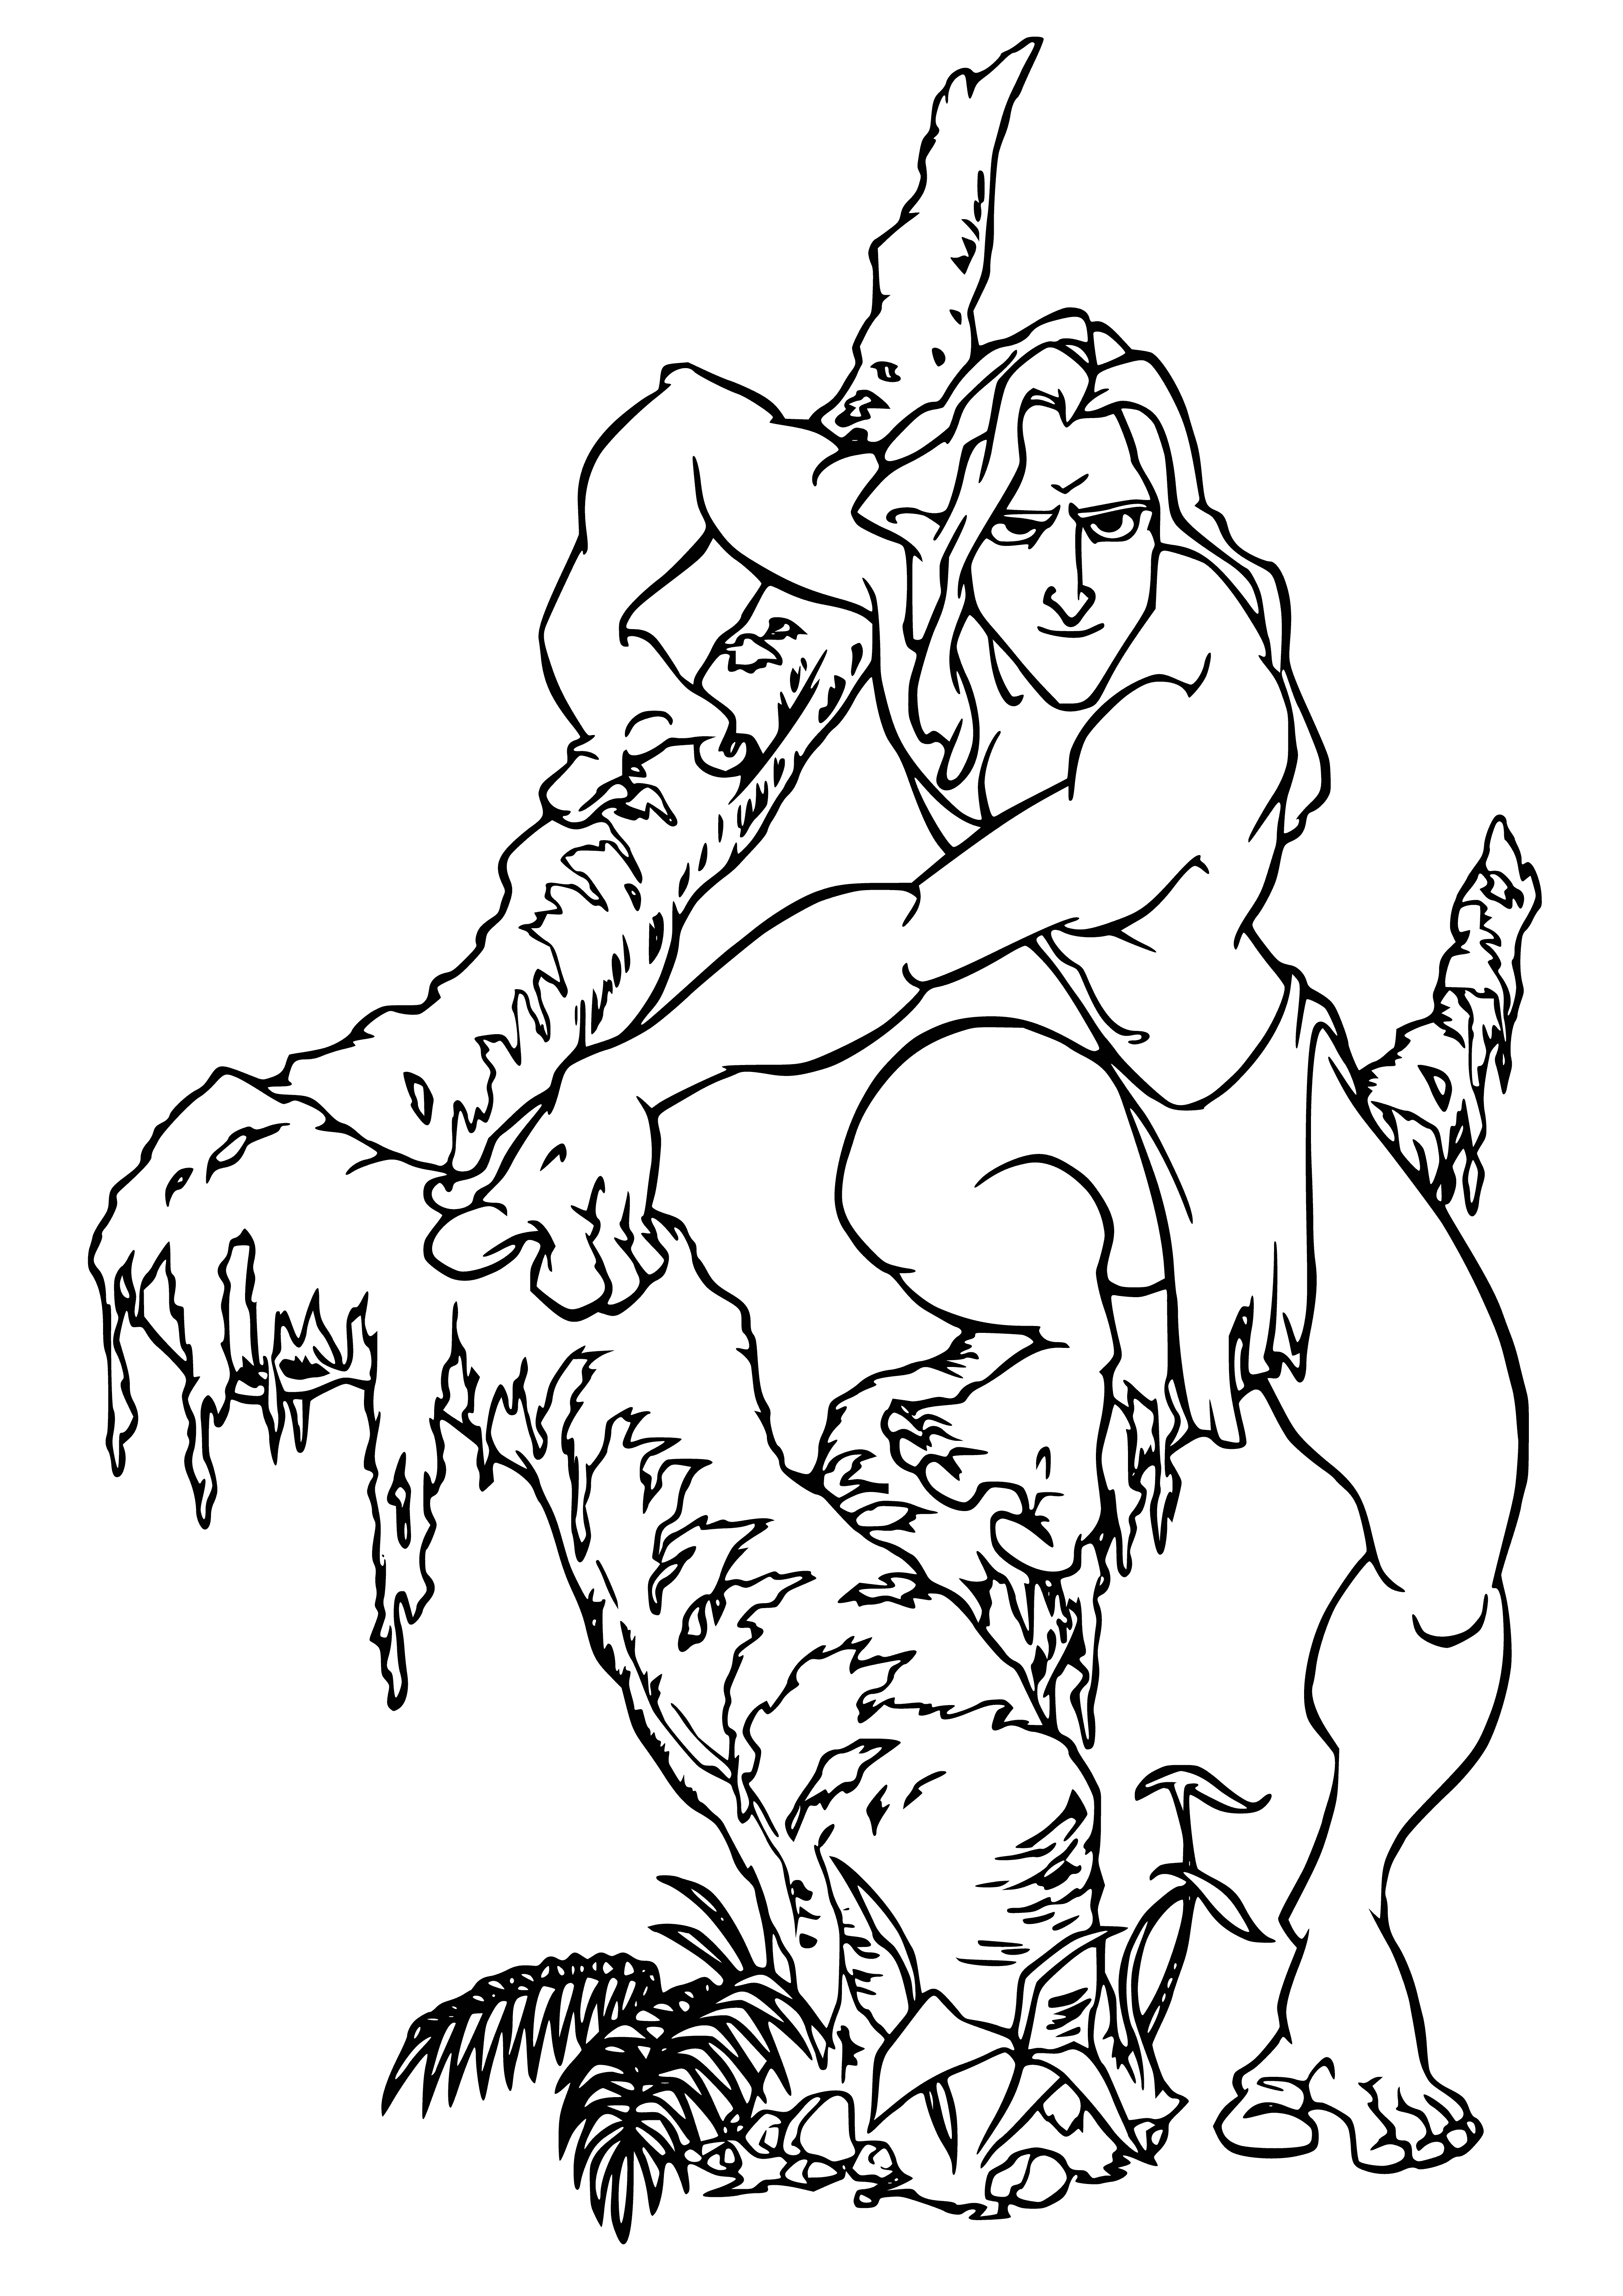 Tarzan coloring page